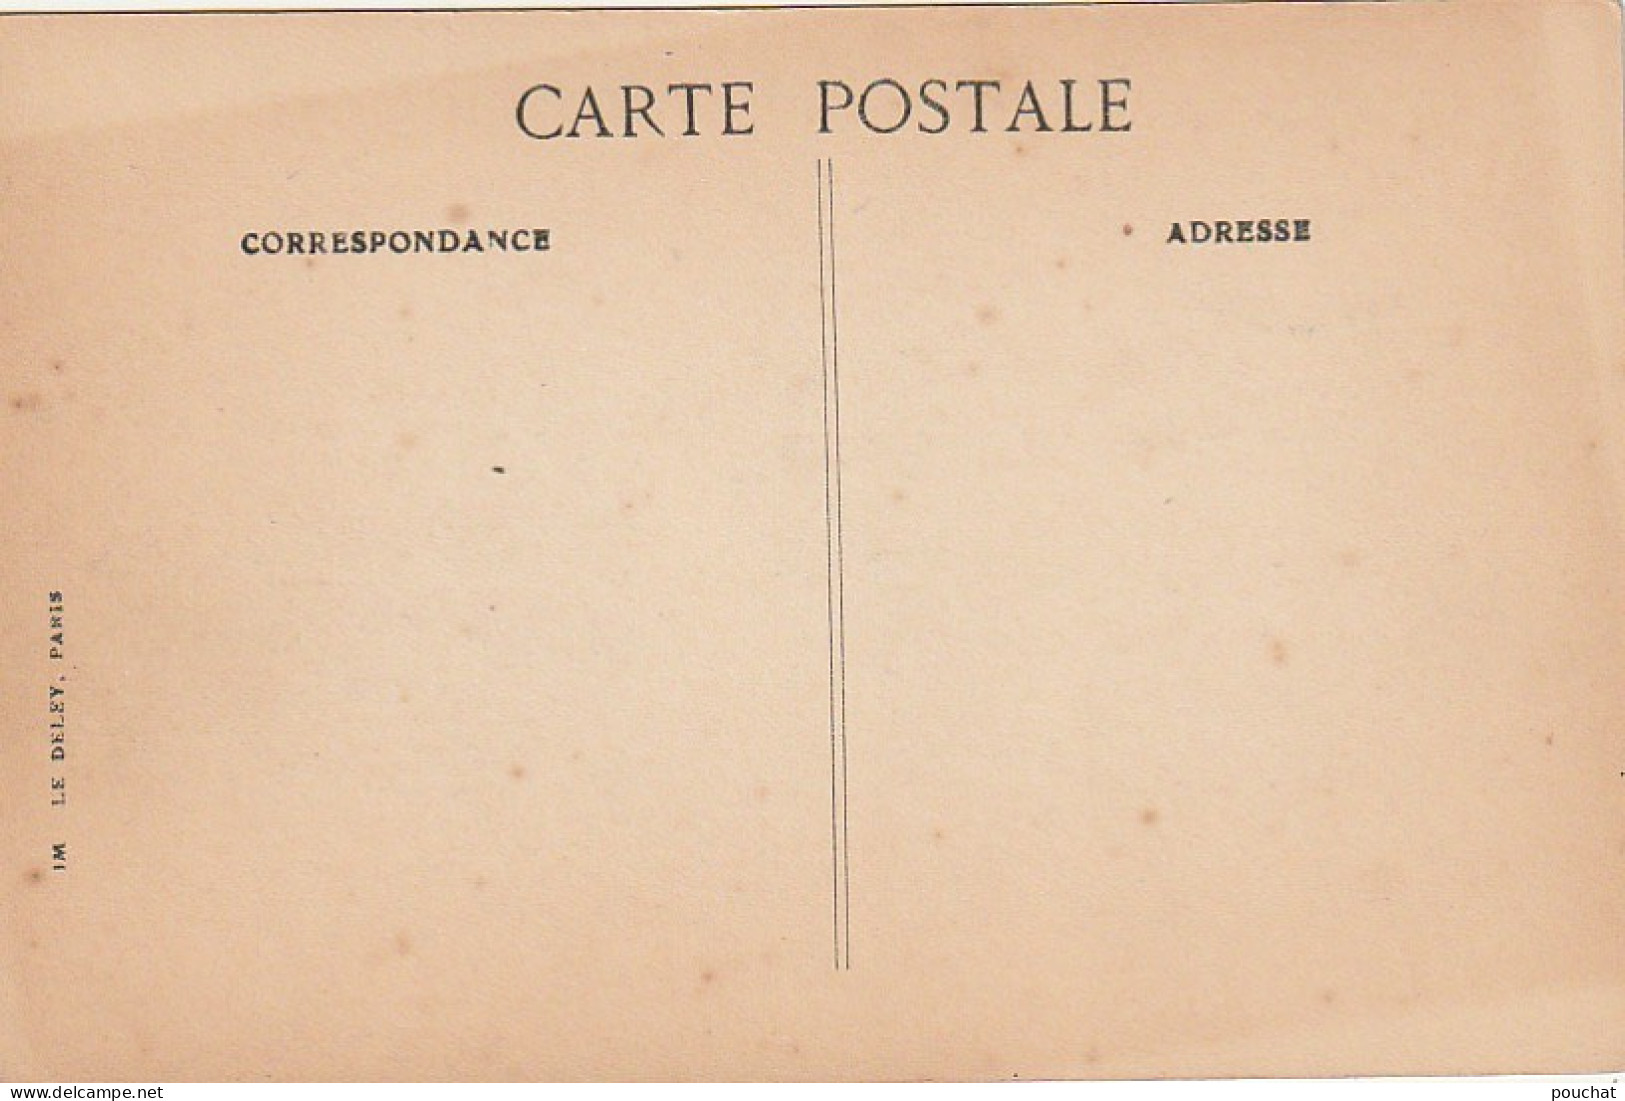 JA 2 (75) PARIS - FETES DE LA VICTOIRE 1919 - DEVANT LE CENOTAPHE - LA DELEGATION ALSACIENNE LORRAINE - 2 SCANS - Sets And Collections